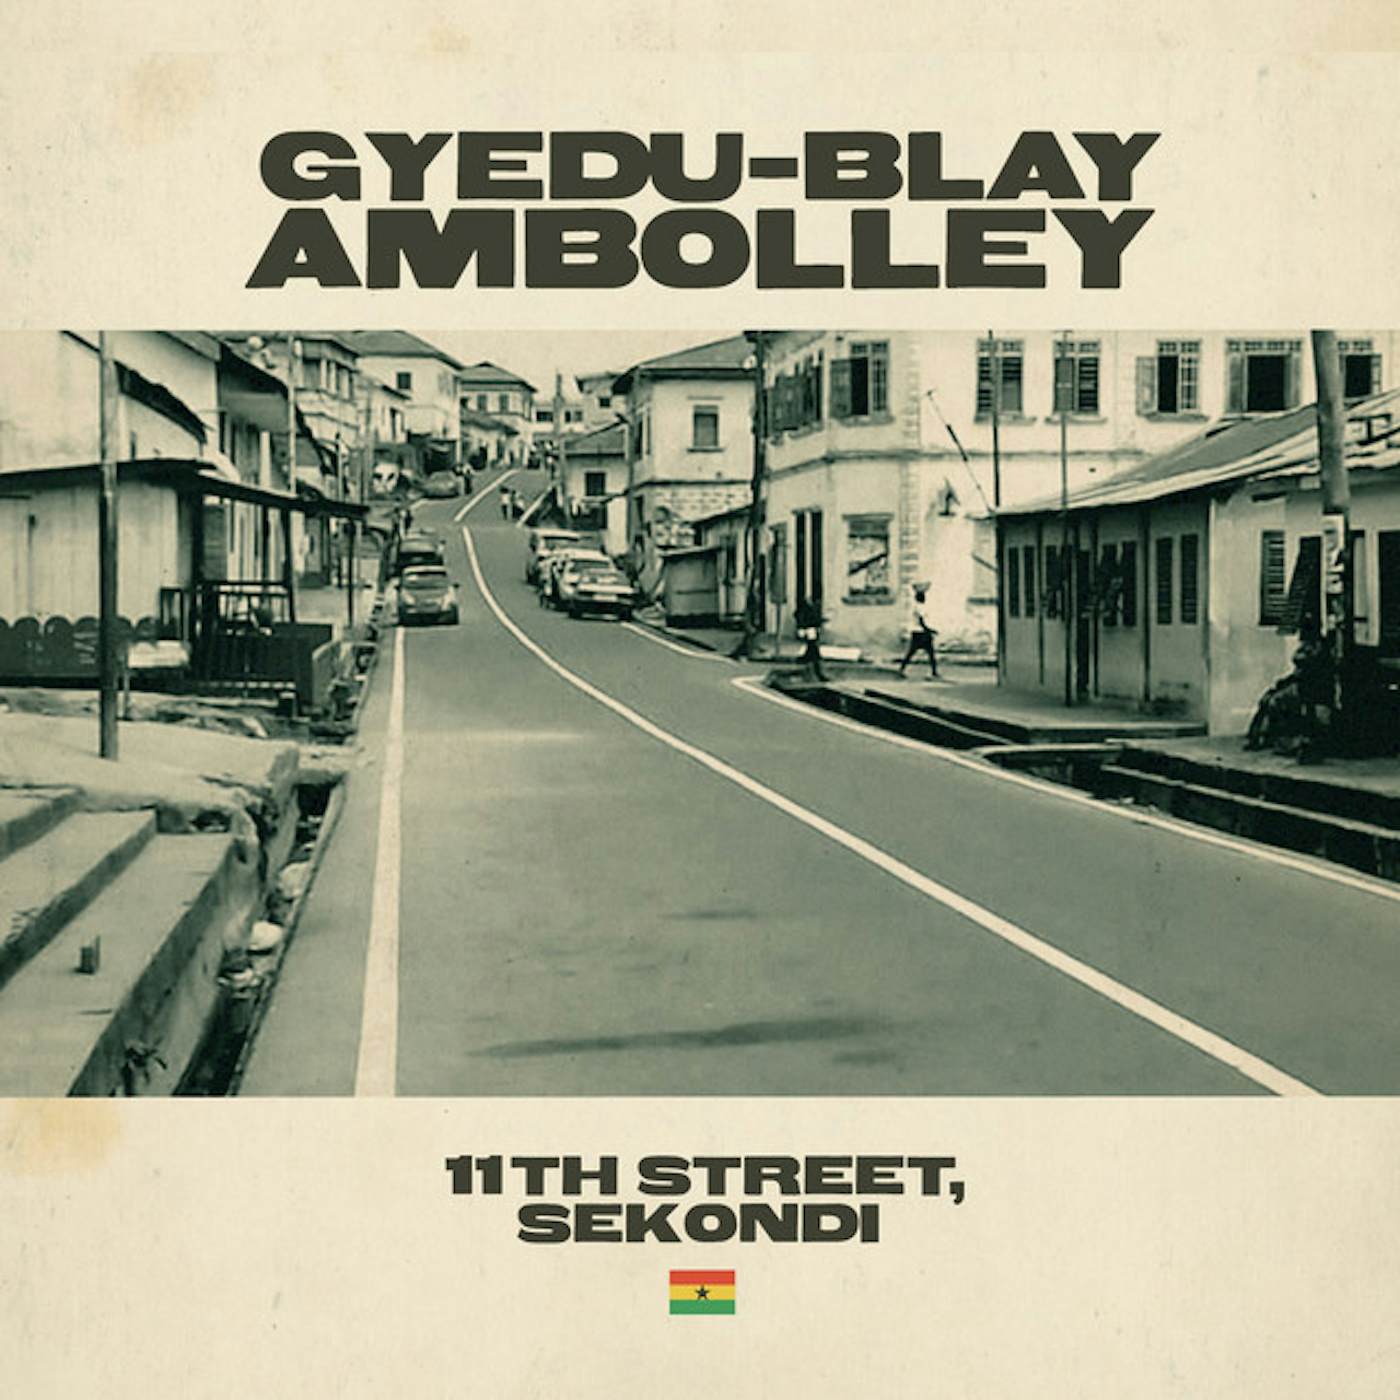 Gyedu-Blay Ambolley 11TH STREET SEKONDI Vinyl Record